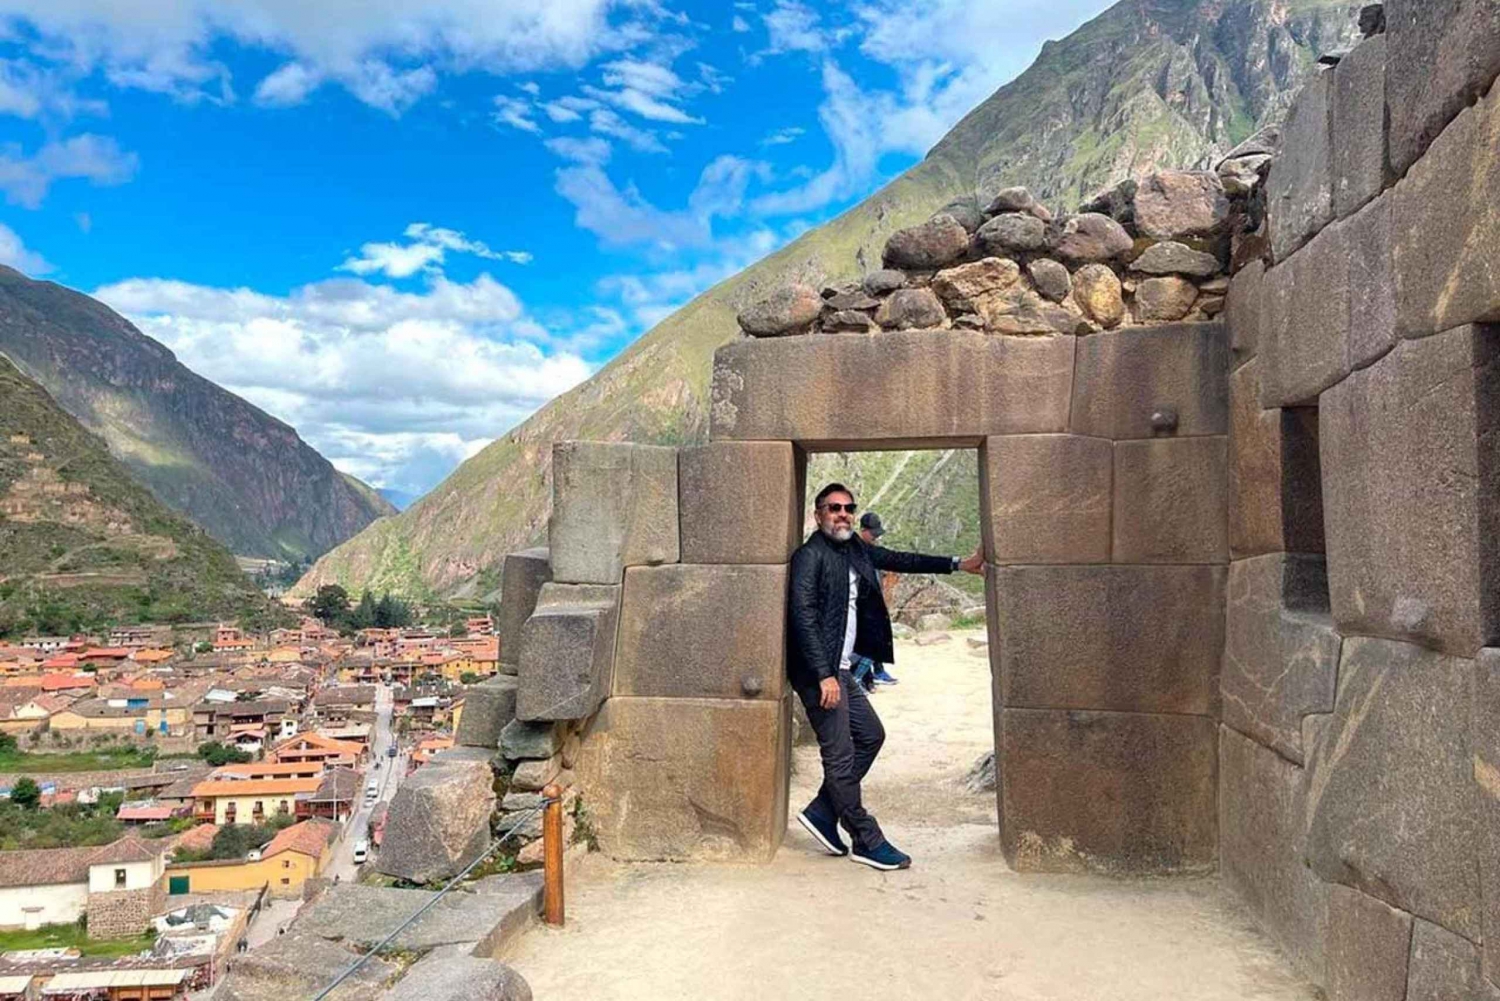 Excursão ao Vale Sagrado dos Incas